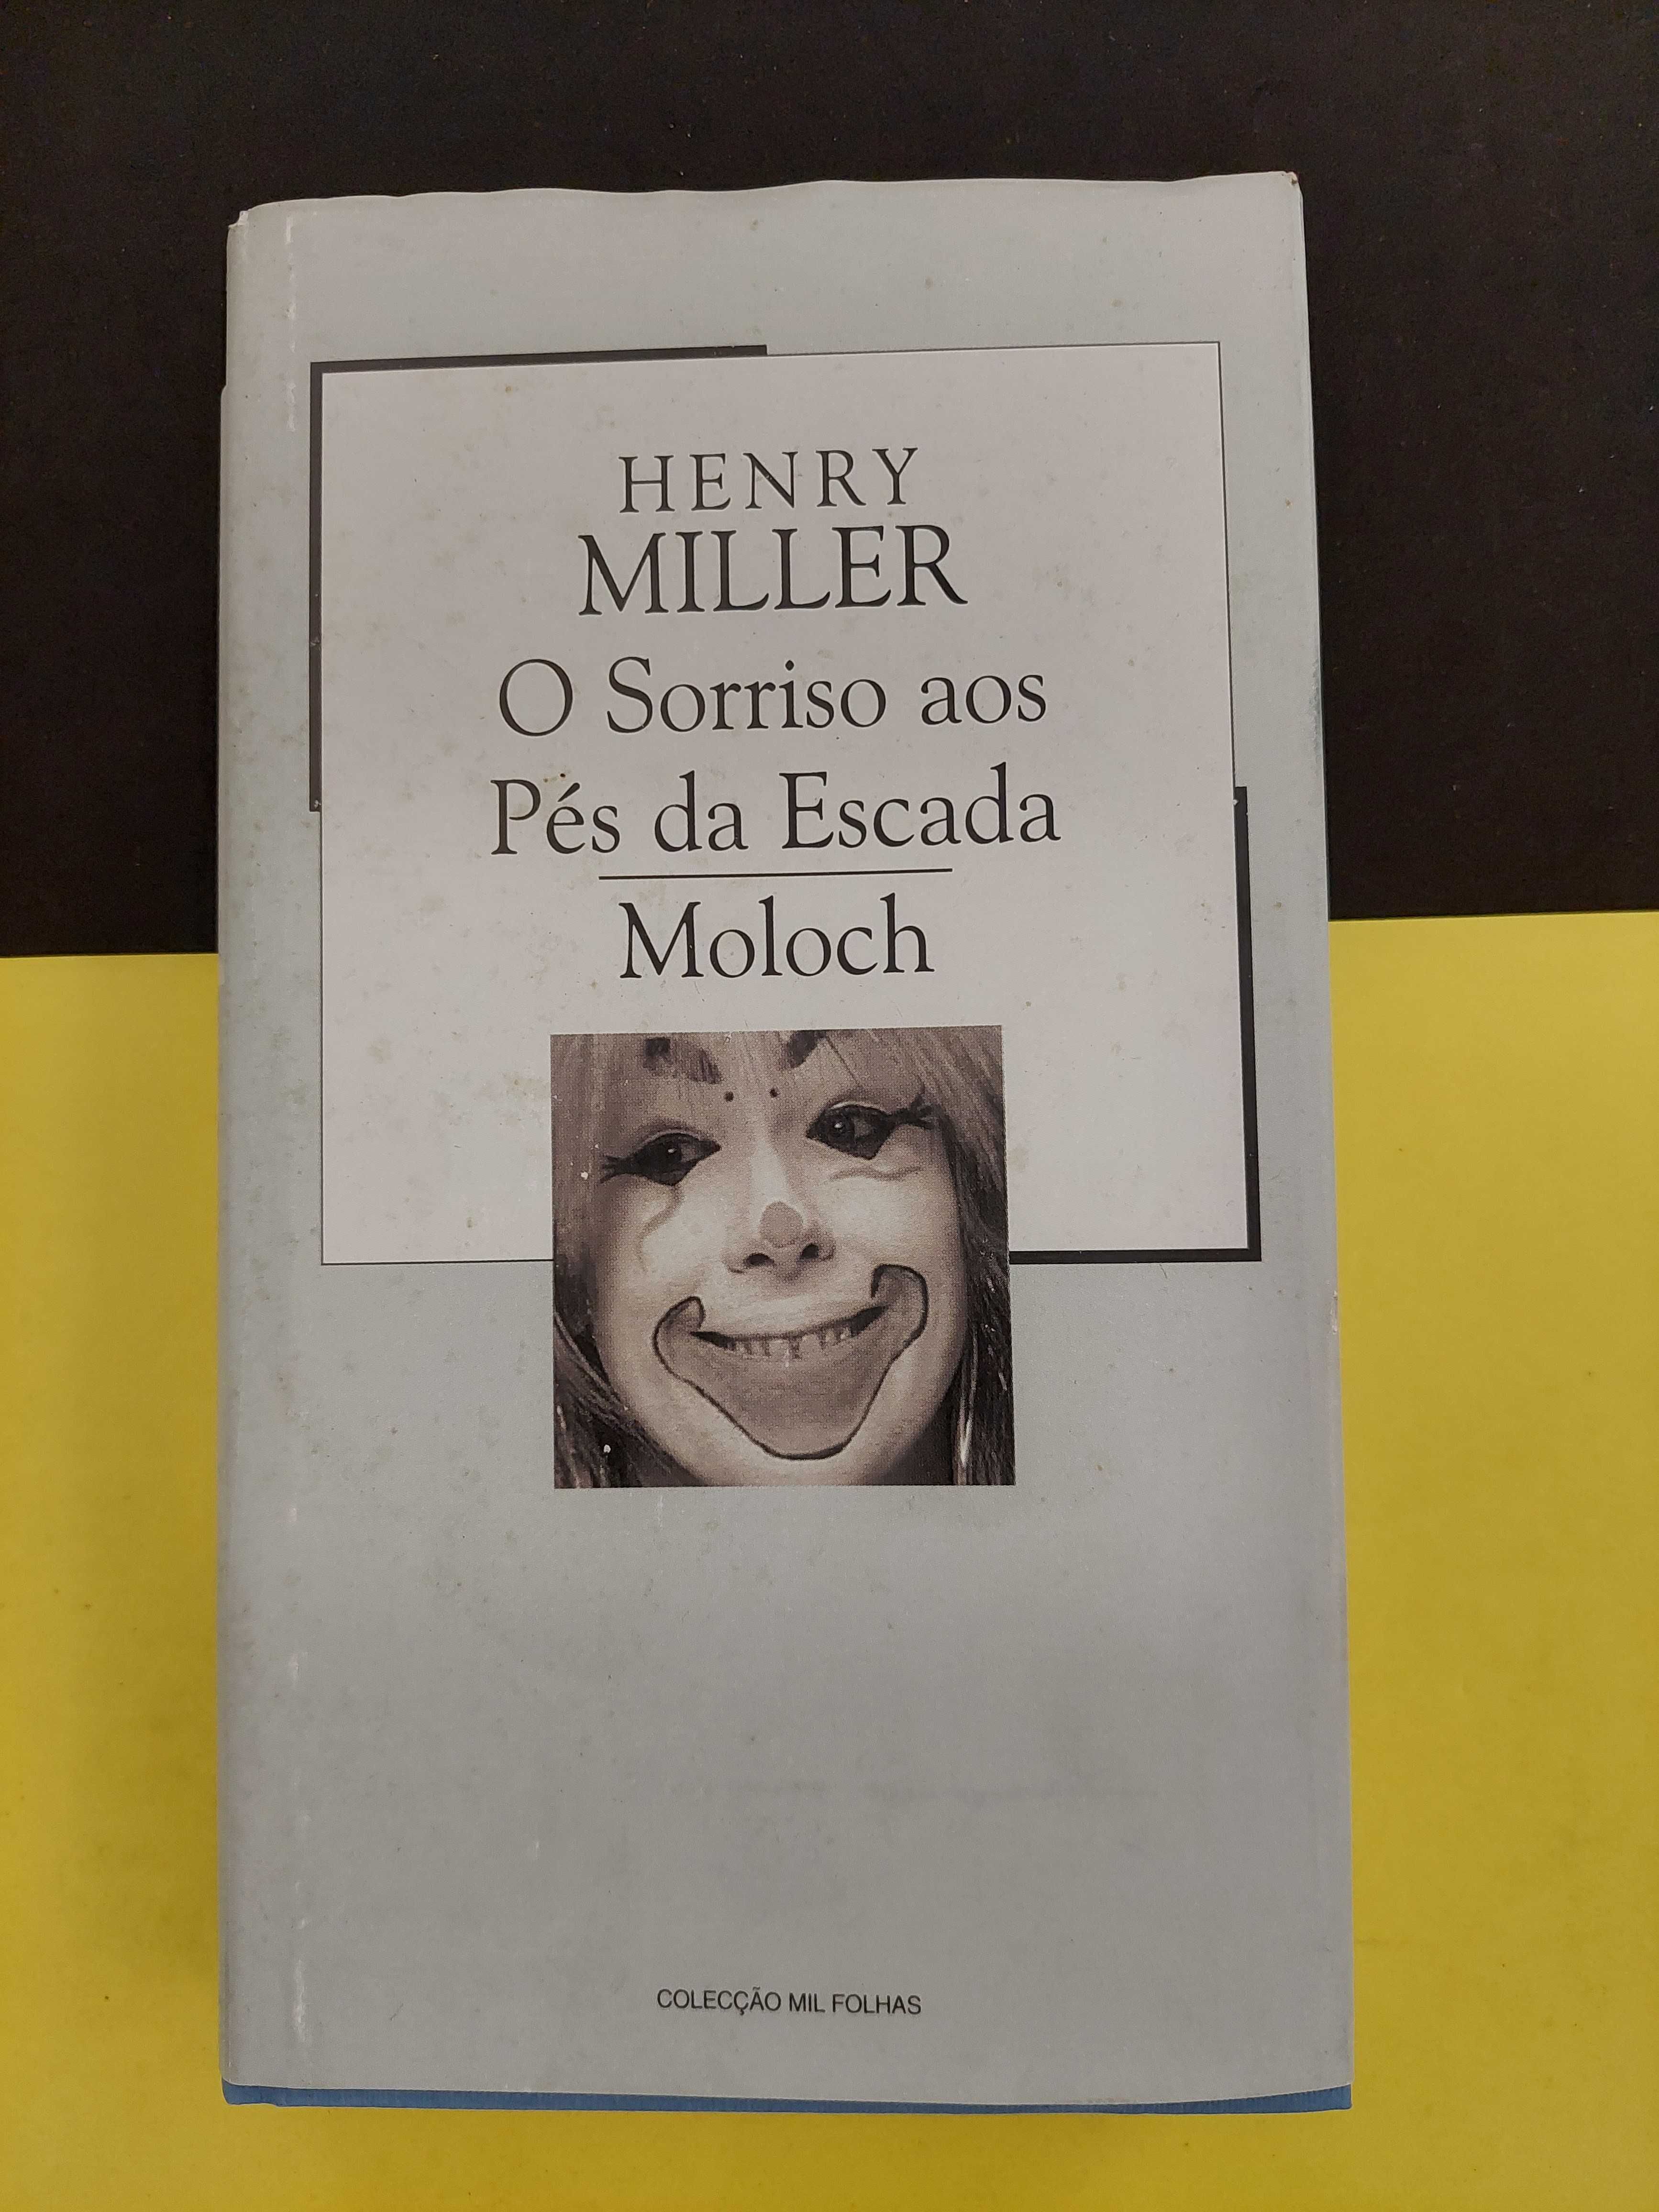 Henry Miller - O Sorriso aos pés da escada